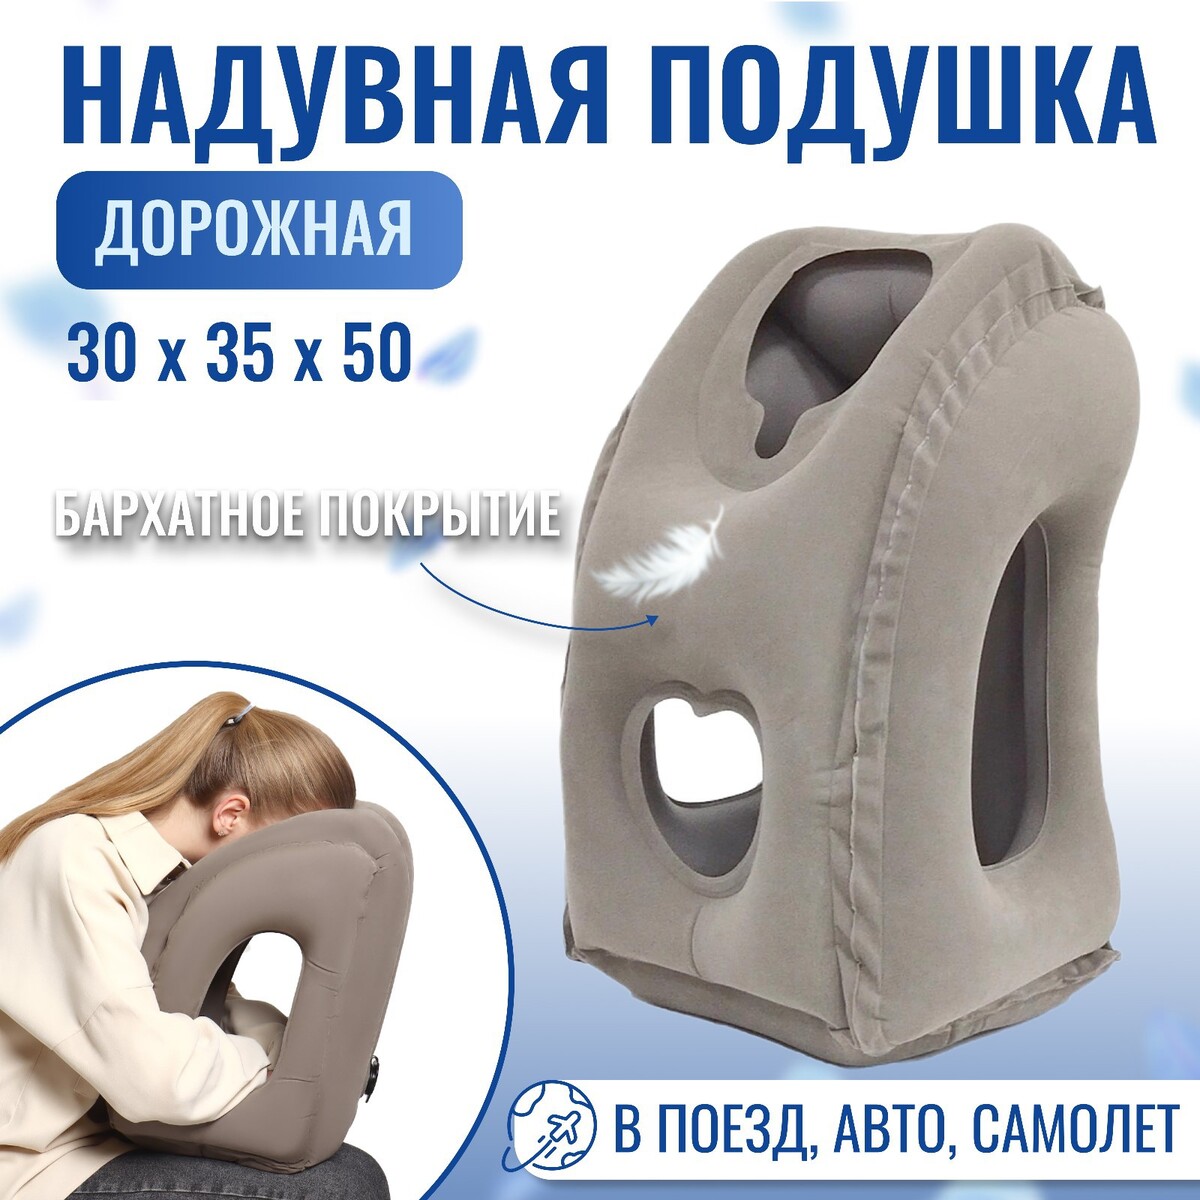 Подушка надувная, 50 × 35 × 30 см, в чехле, цвет серый подушка для шеи дорожная надувная 42 × 27 см серый